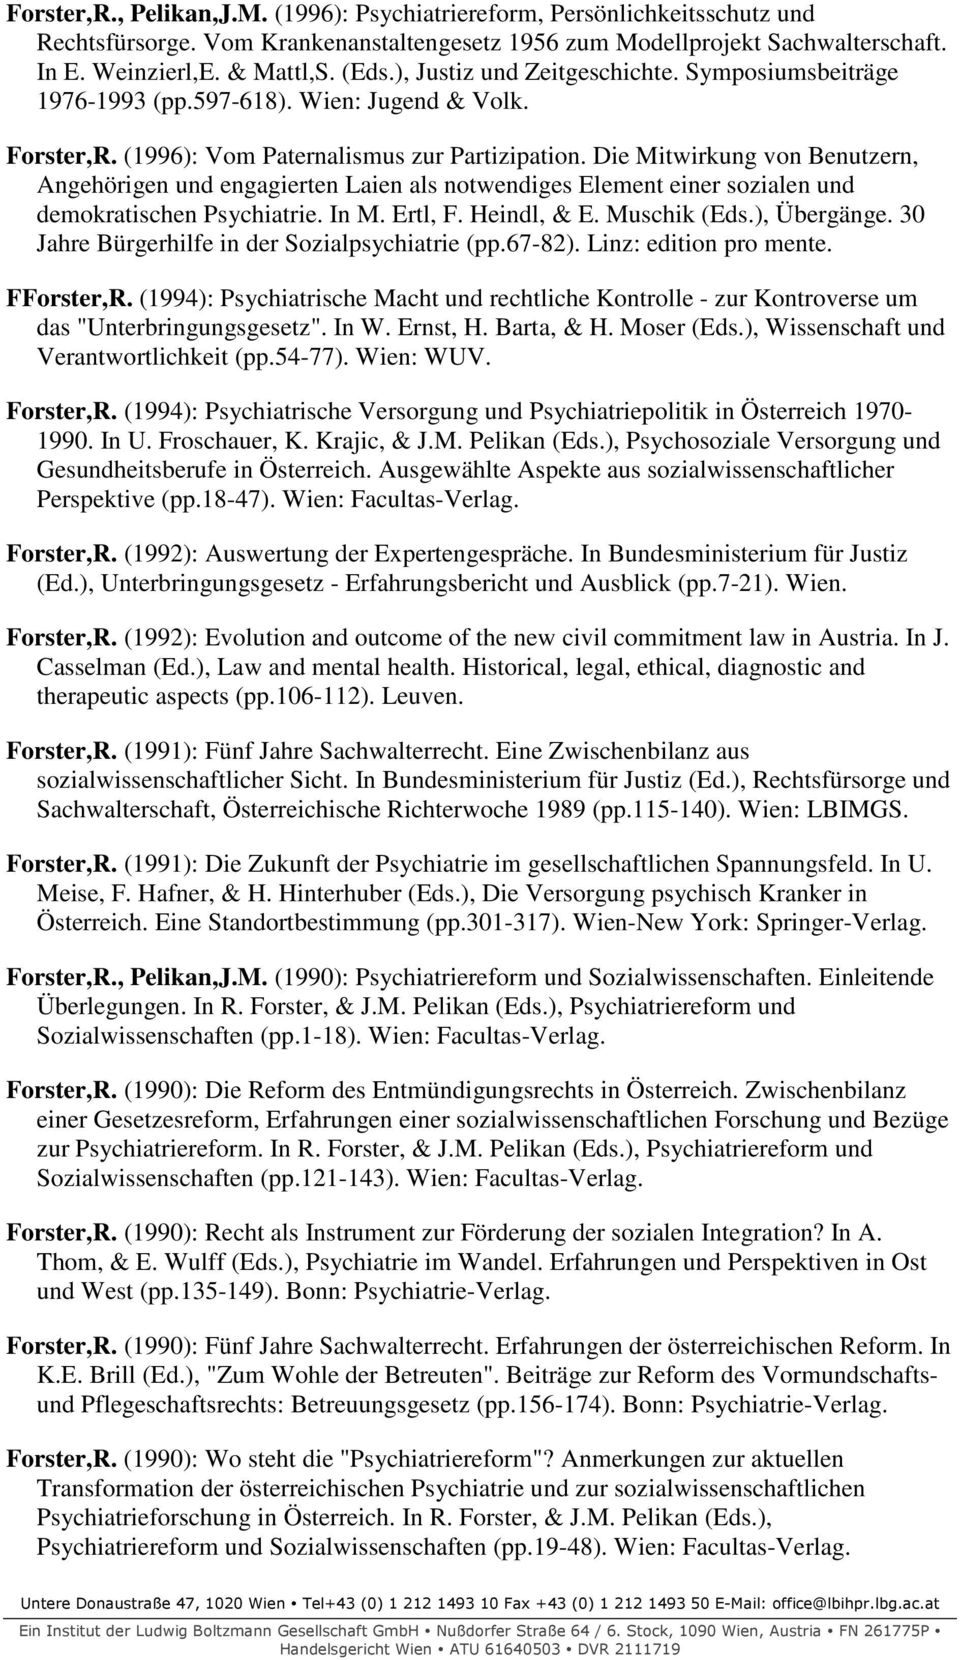 Die Mitwirkung von Benutzern, Angehörigen und engagierten Laien als notwendiges Element einer sozialen und demokratischen Psychiatrie. In M. Ertl, F. Heindl, & E. Muschik (Eds.), Übergänge.